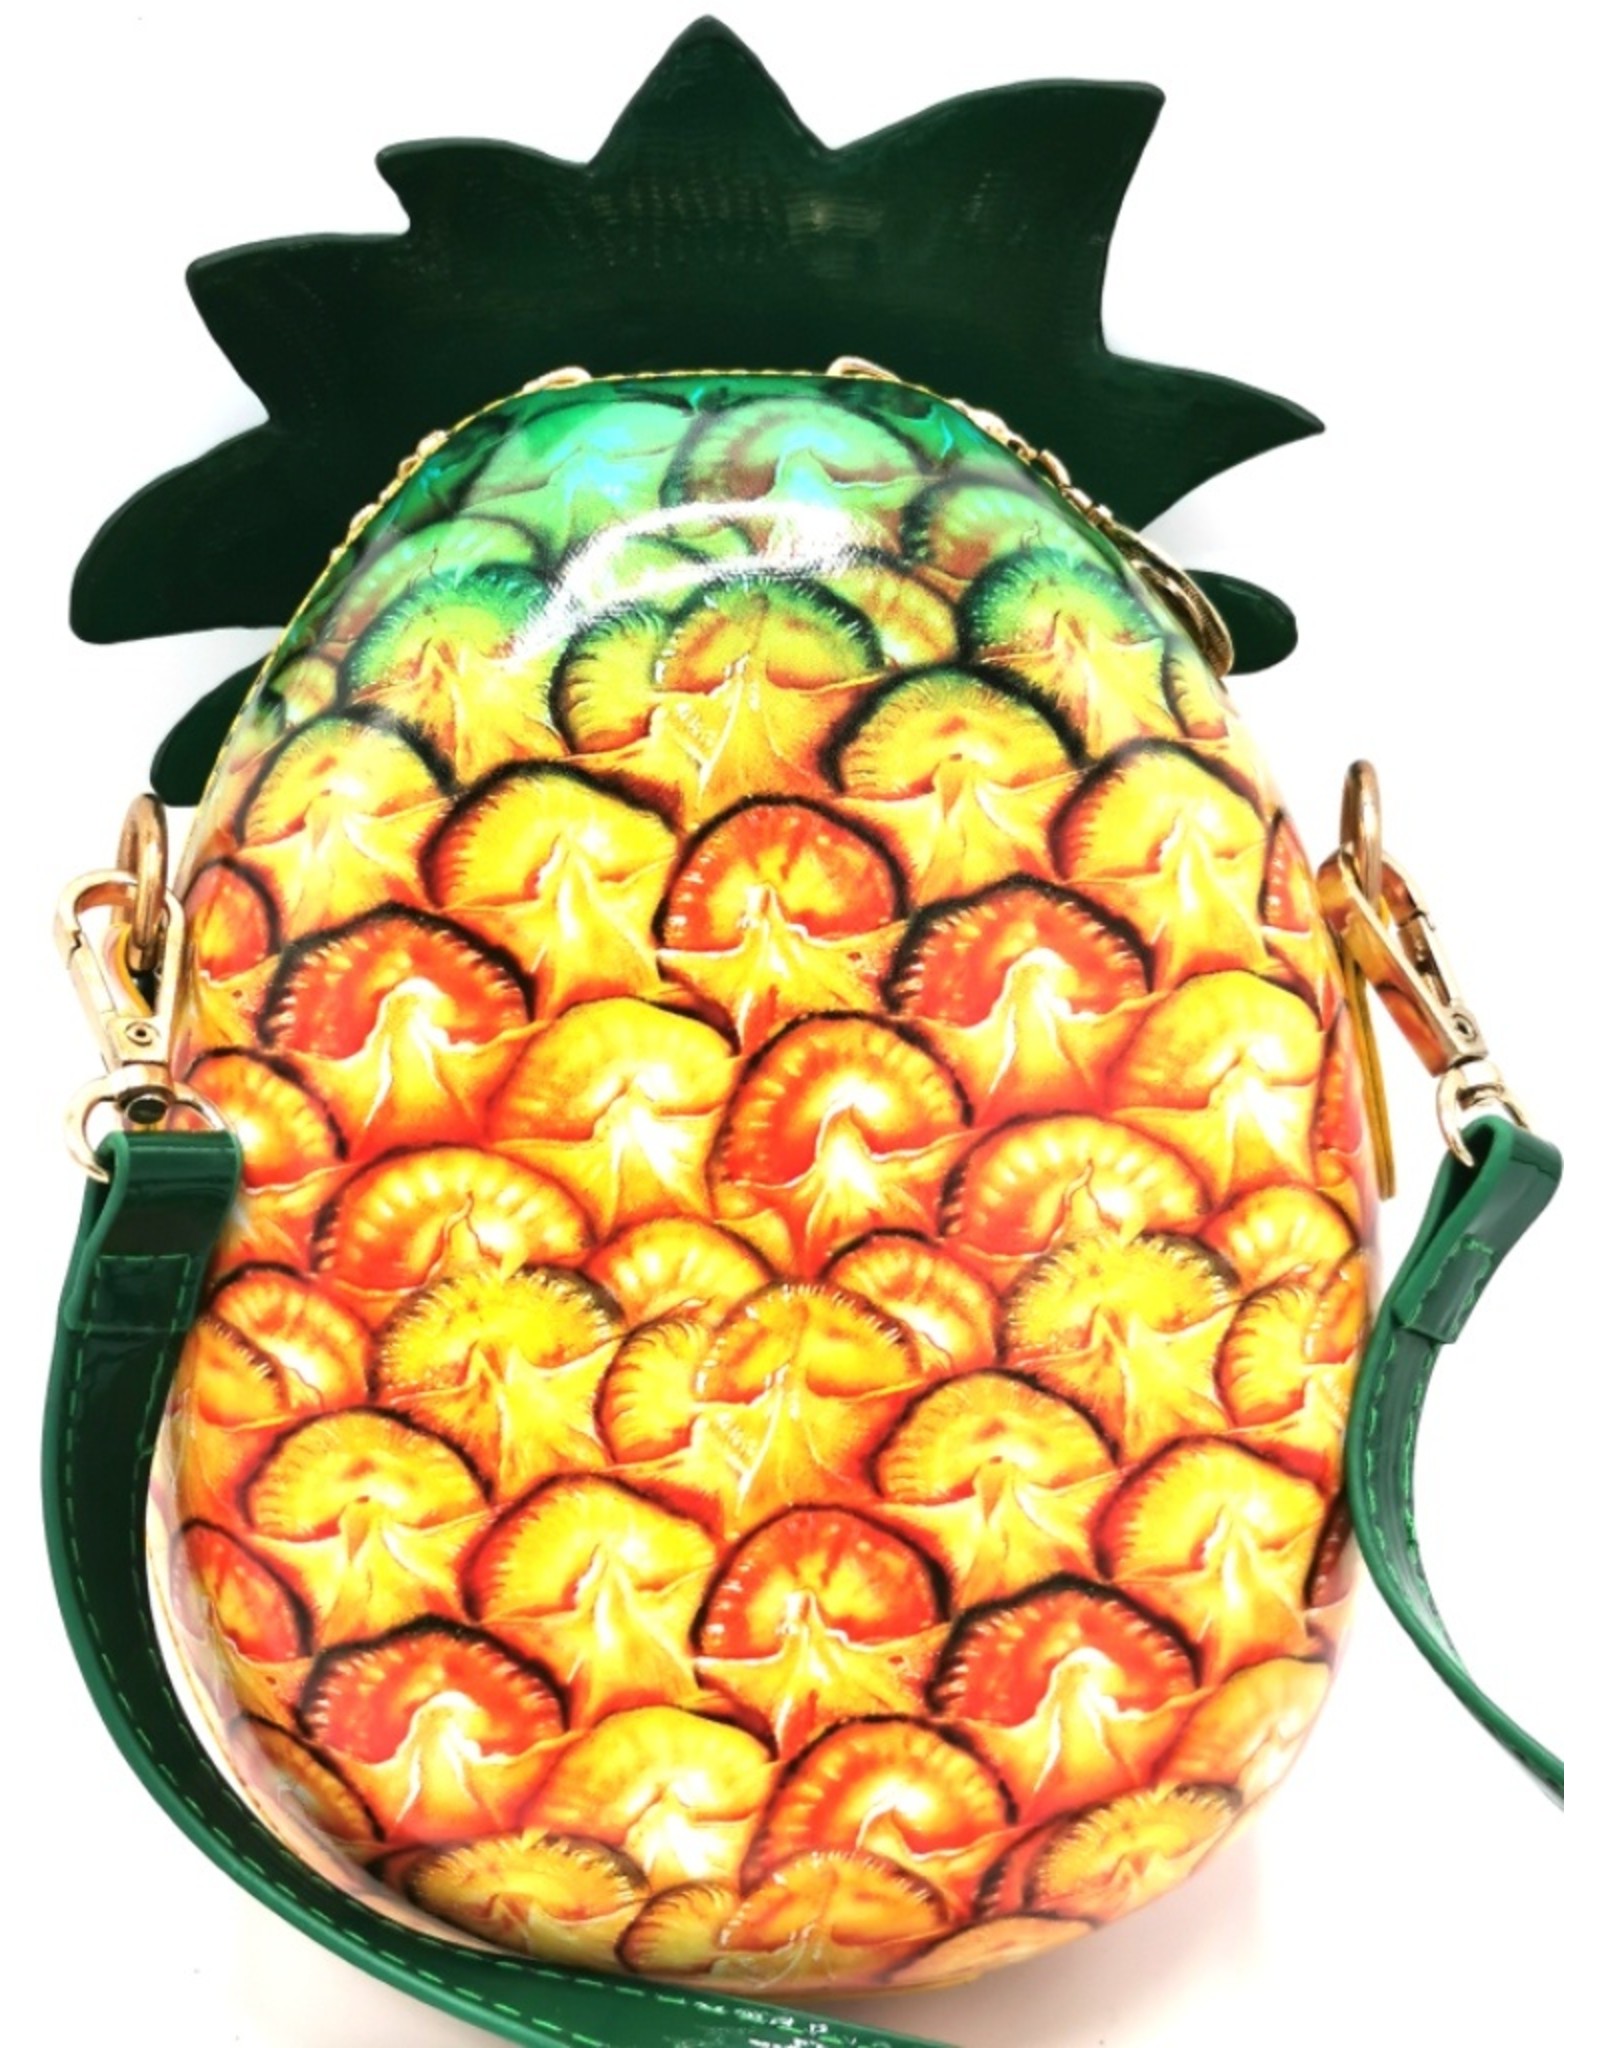 Magic Bags Fantasy bags - Fantasy shoulder bag Pineapple